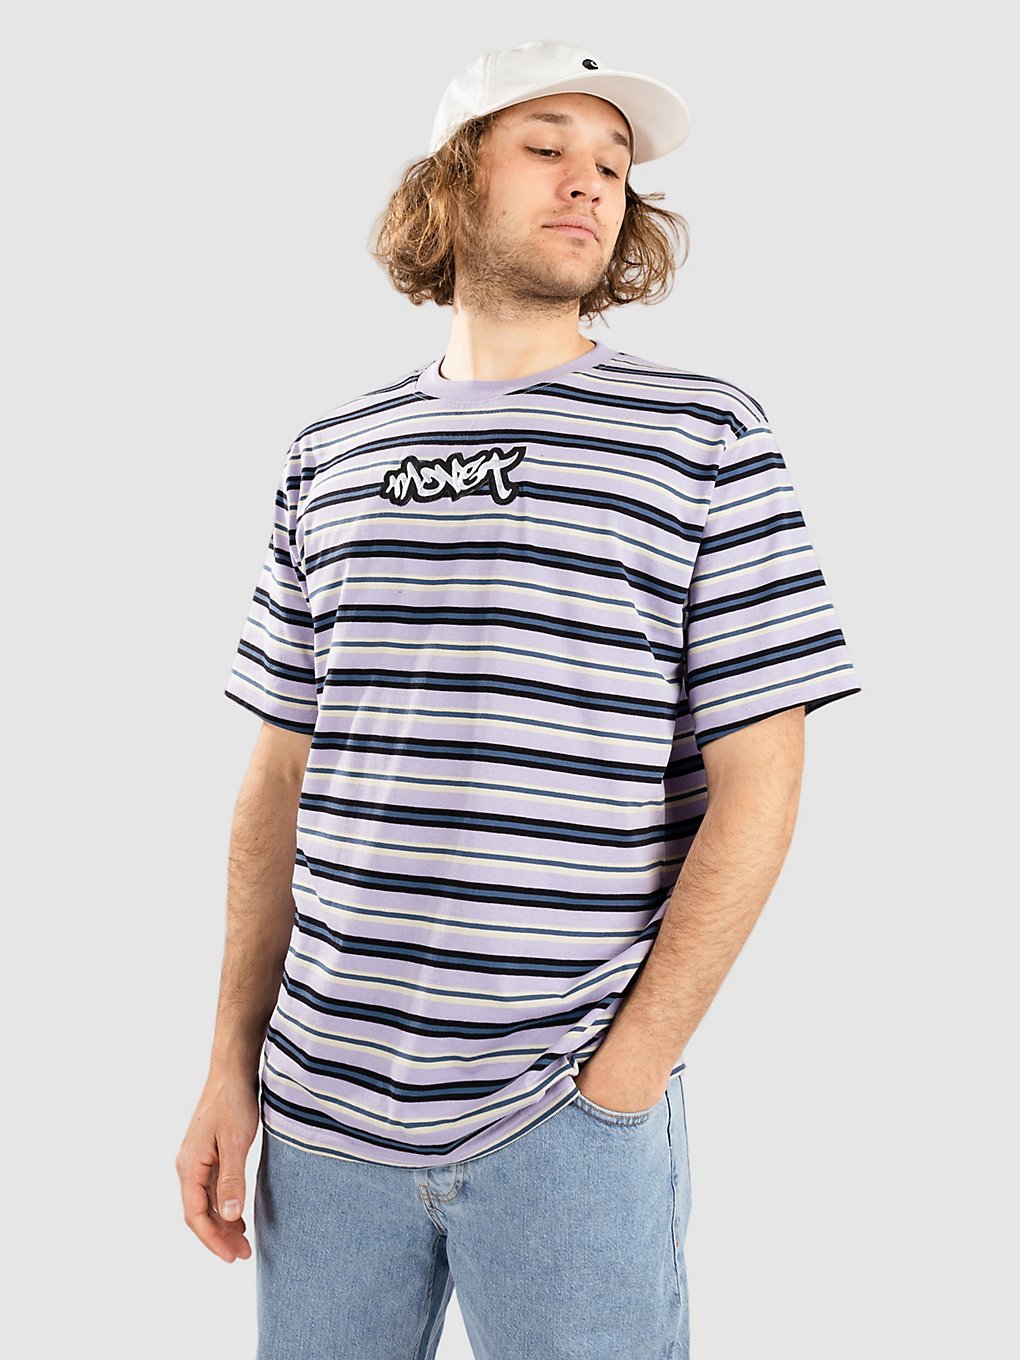 Monet Skateboards Railway Stripe T-Shirt lavender kaufen